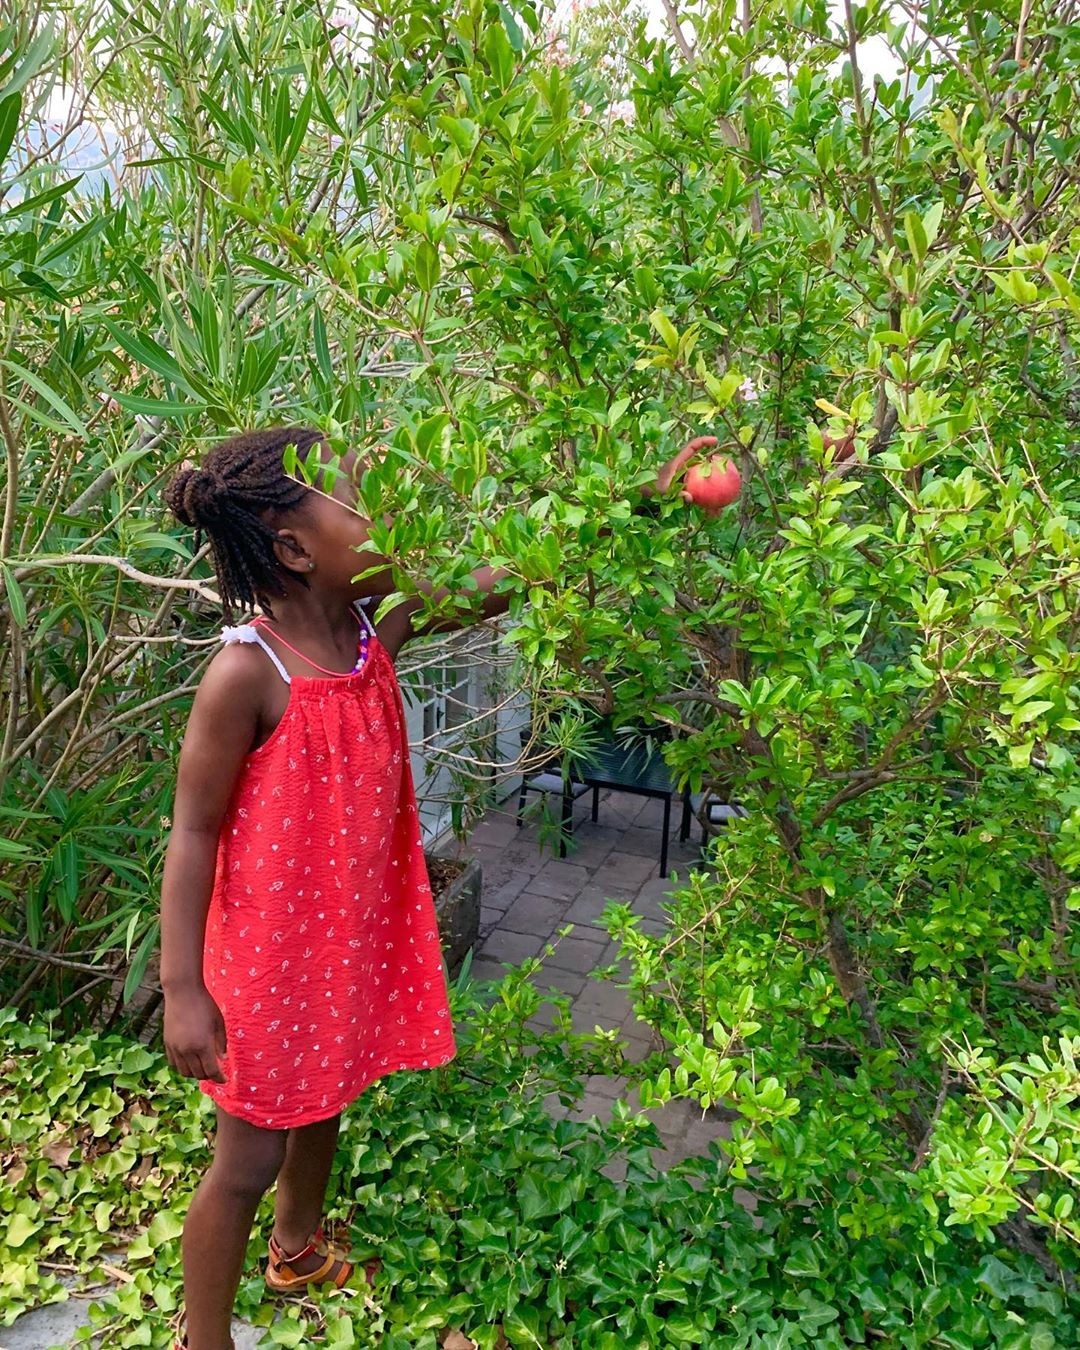 Foto de Jackson com vestido colhendo frutas compartilhada por Charlize Theron no fim do ano passado (Foto: Reprodução Instagram)